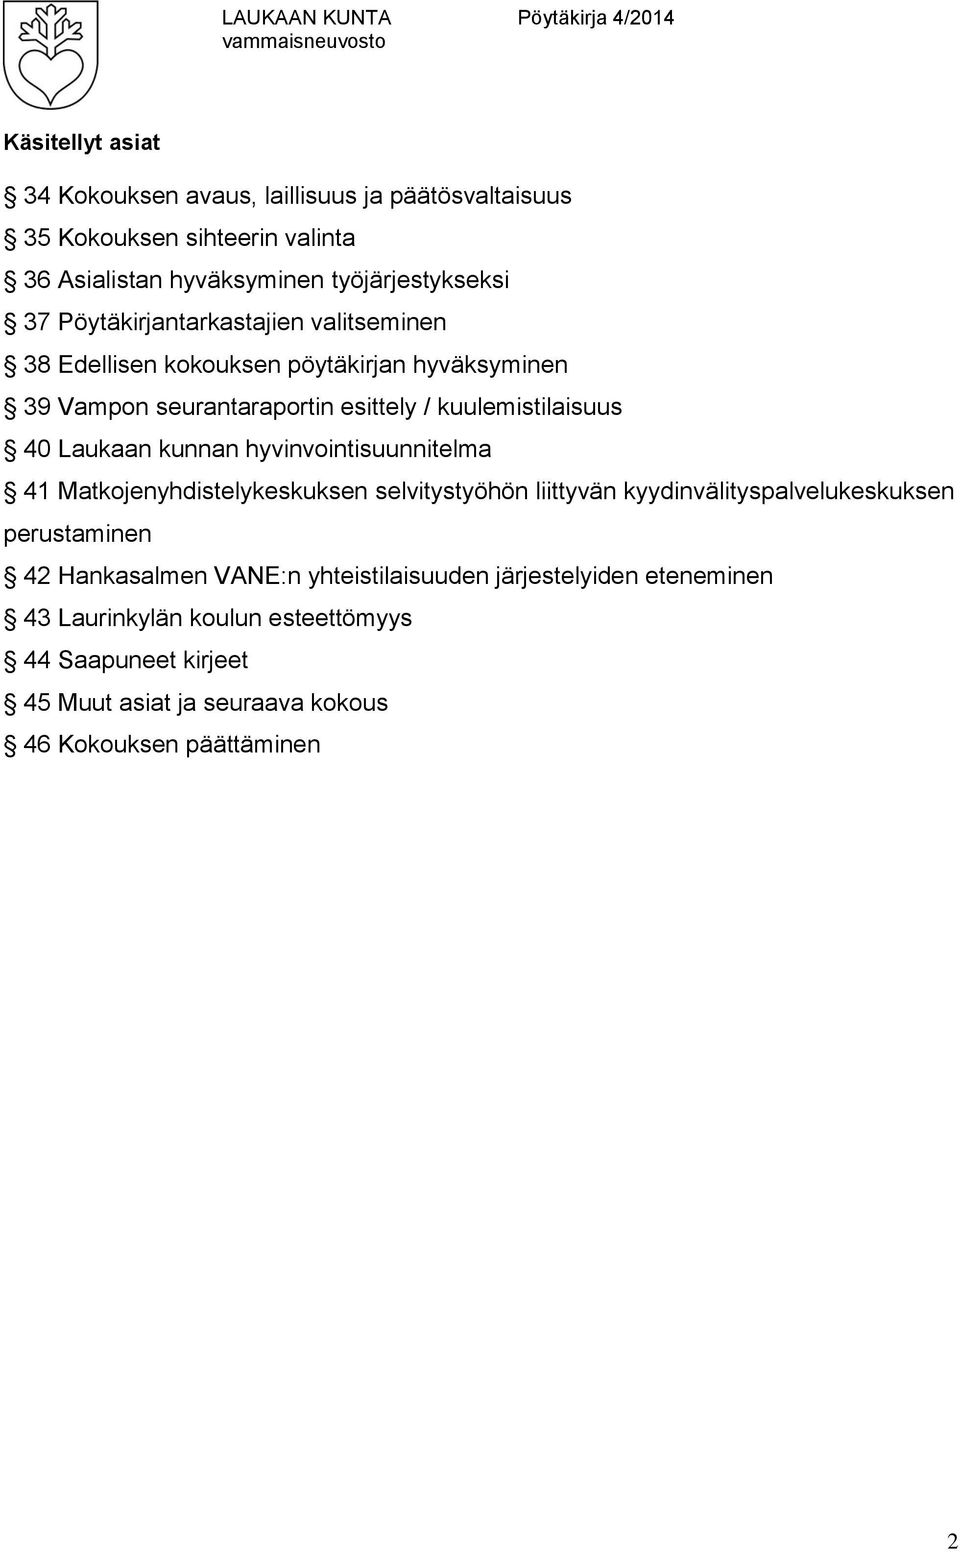 kunnan hyvinvointisuunnitelma 41 Matkojenyhdistelykeskuksen selvitystyöhön liittyvän kyydinvälityspalvelukeskuksen perustaminen 42 Hankasalmen VANE:n